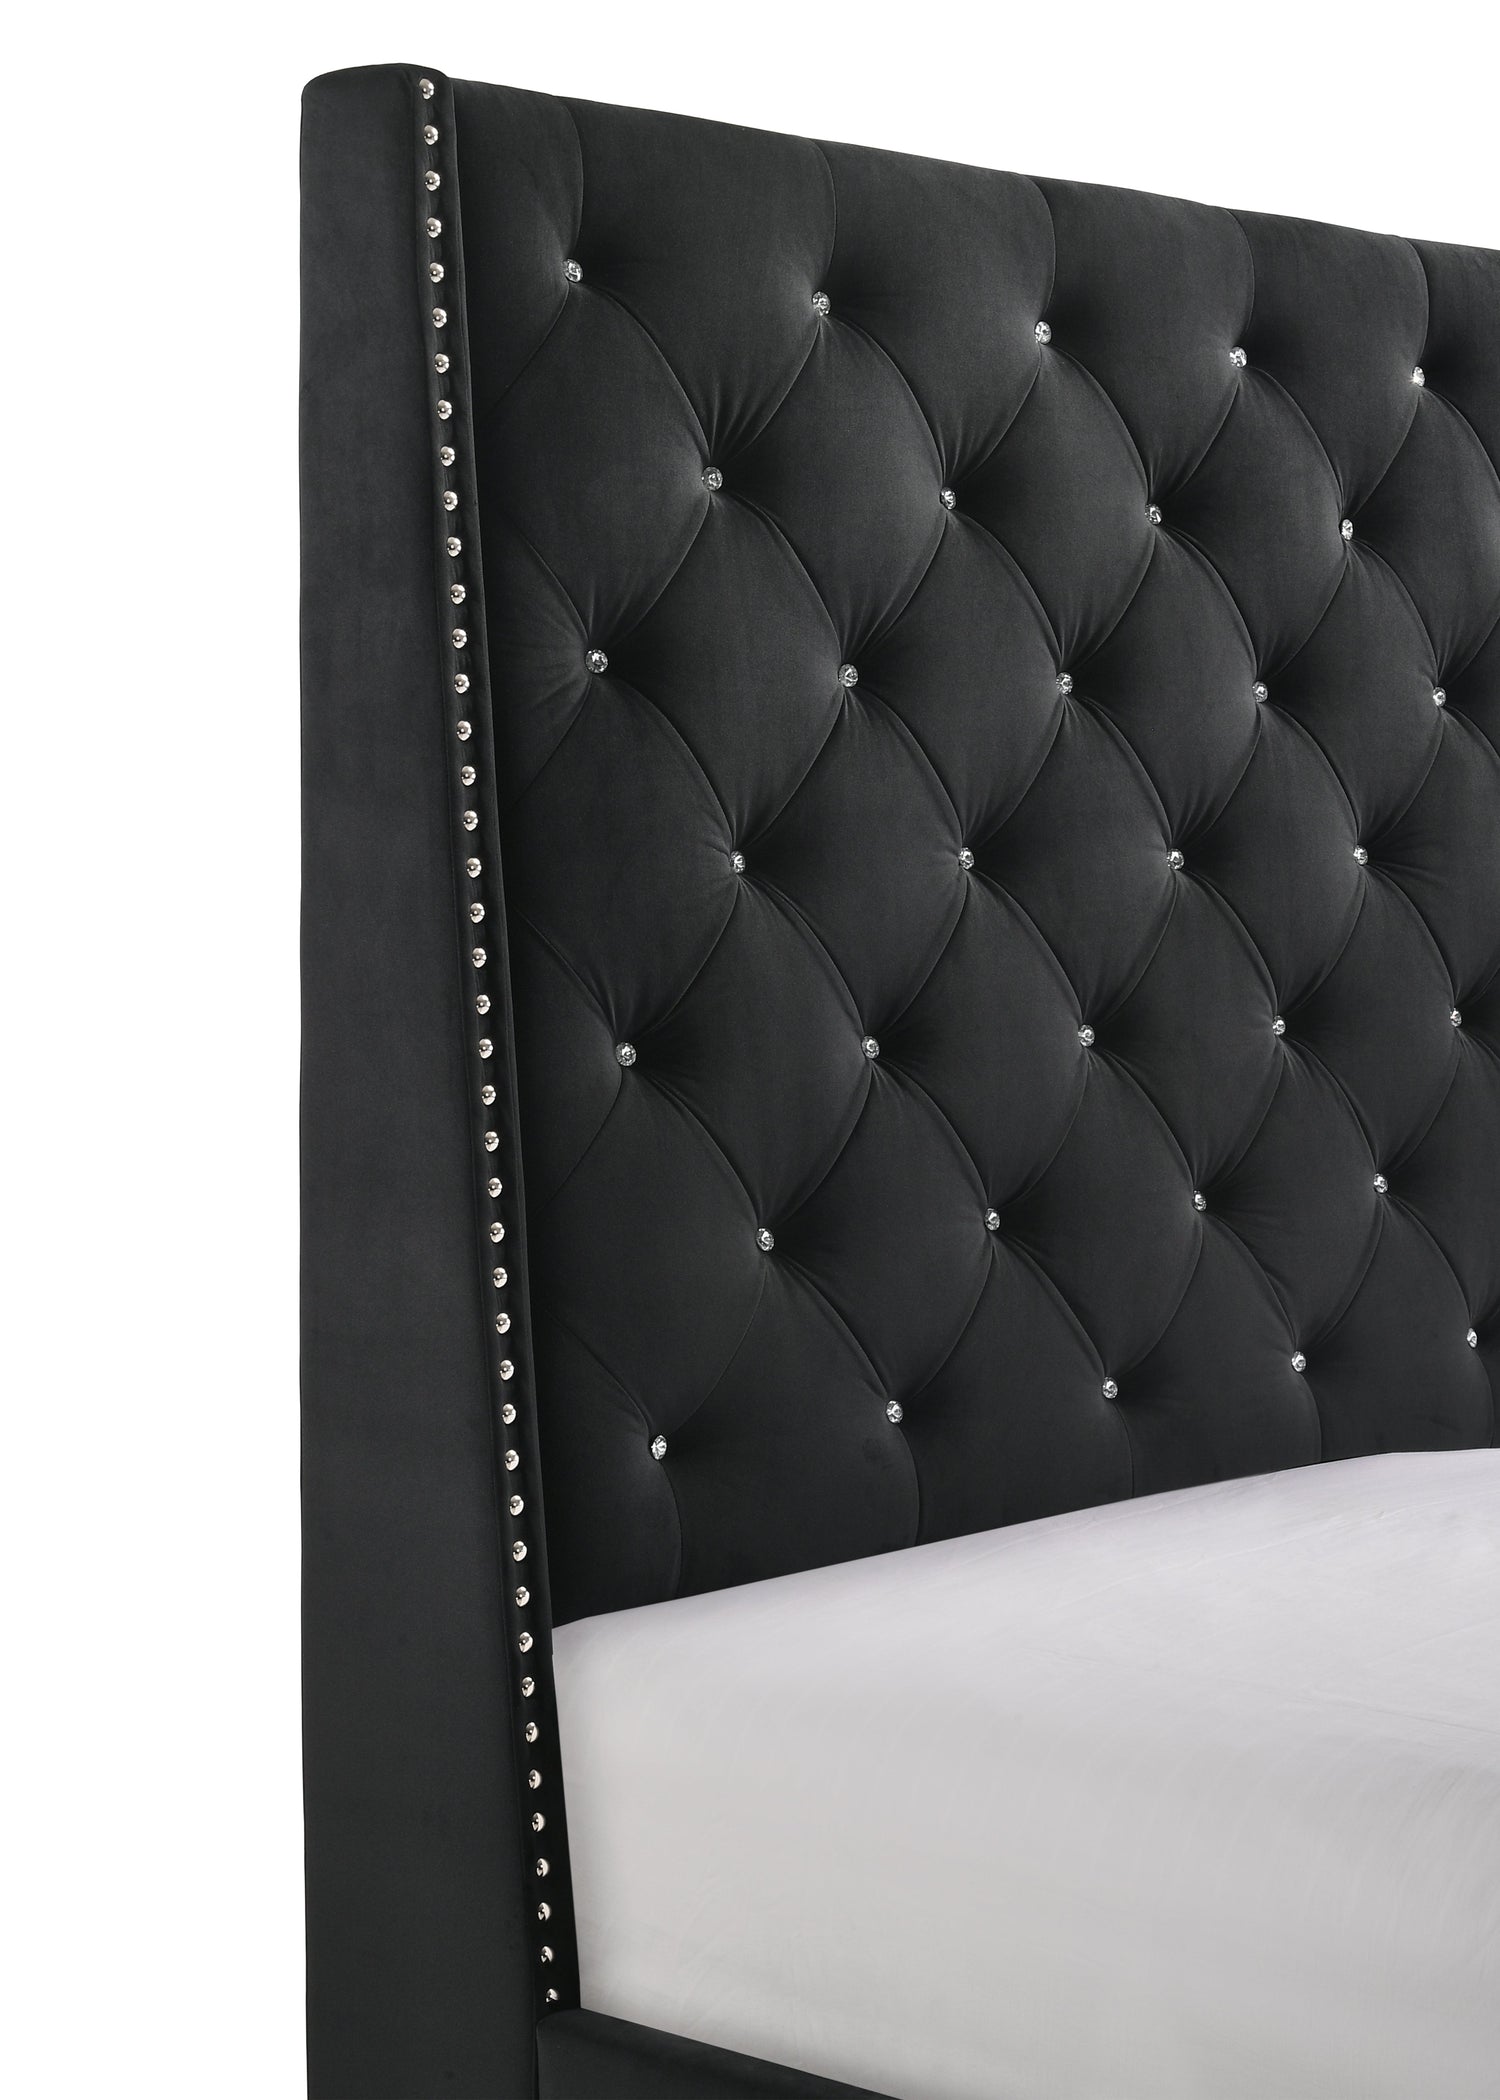 Chantilly Black Velvet King Upholstered Bed - SET | 5265BK-K-HB | 5265BK-K-FRW - Bien Home Furniture &amp; Electronics